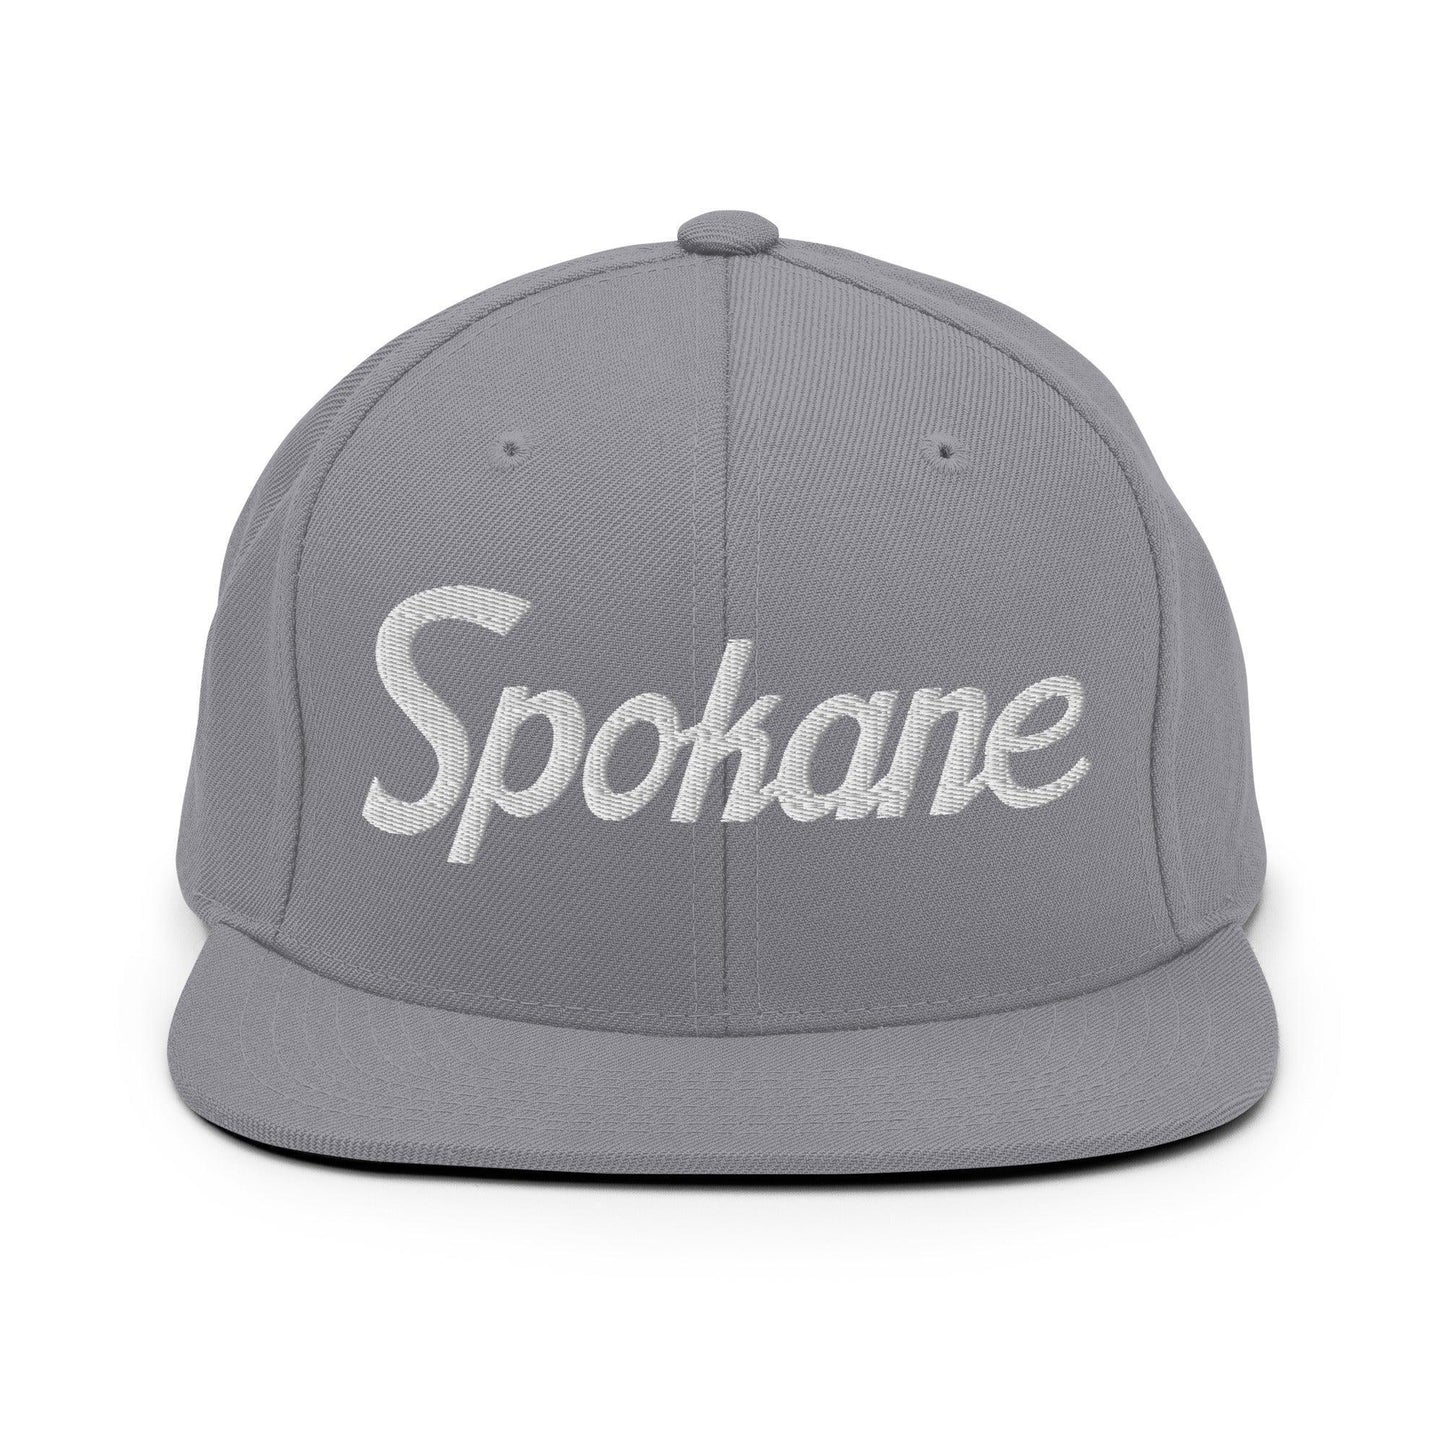 Spokane Script Snapback Hat Silver